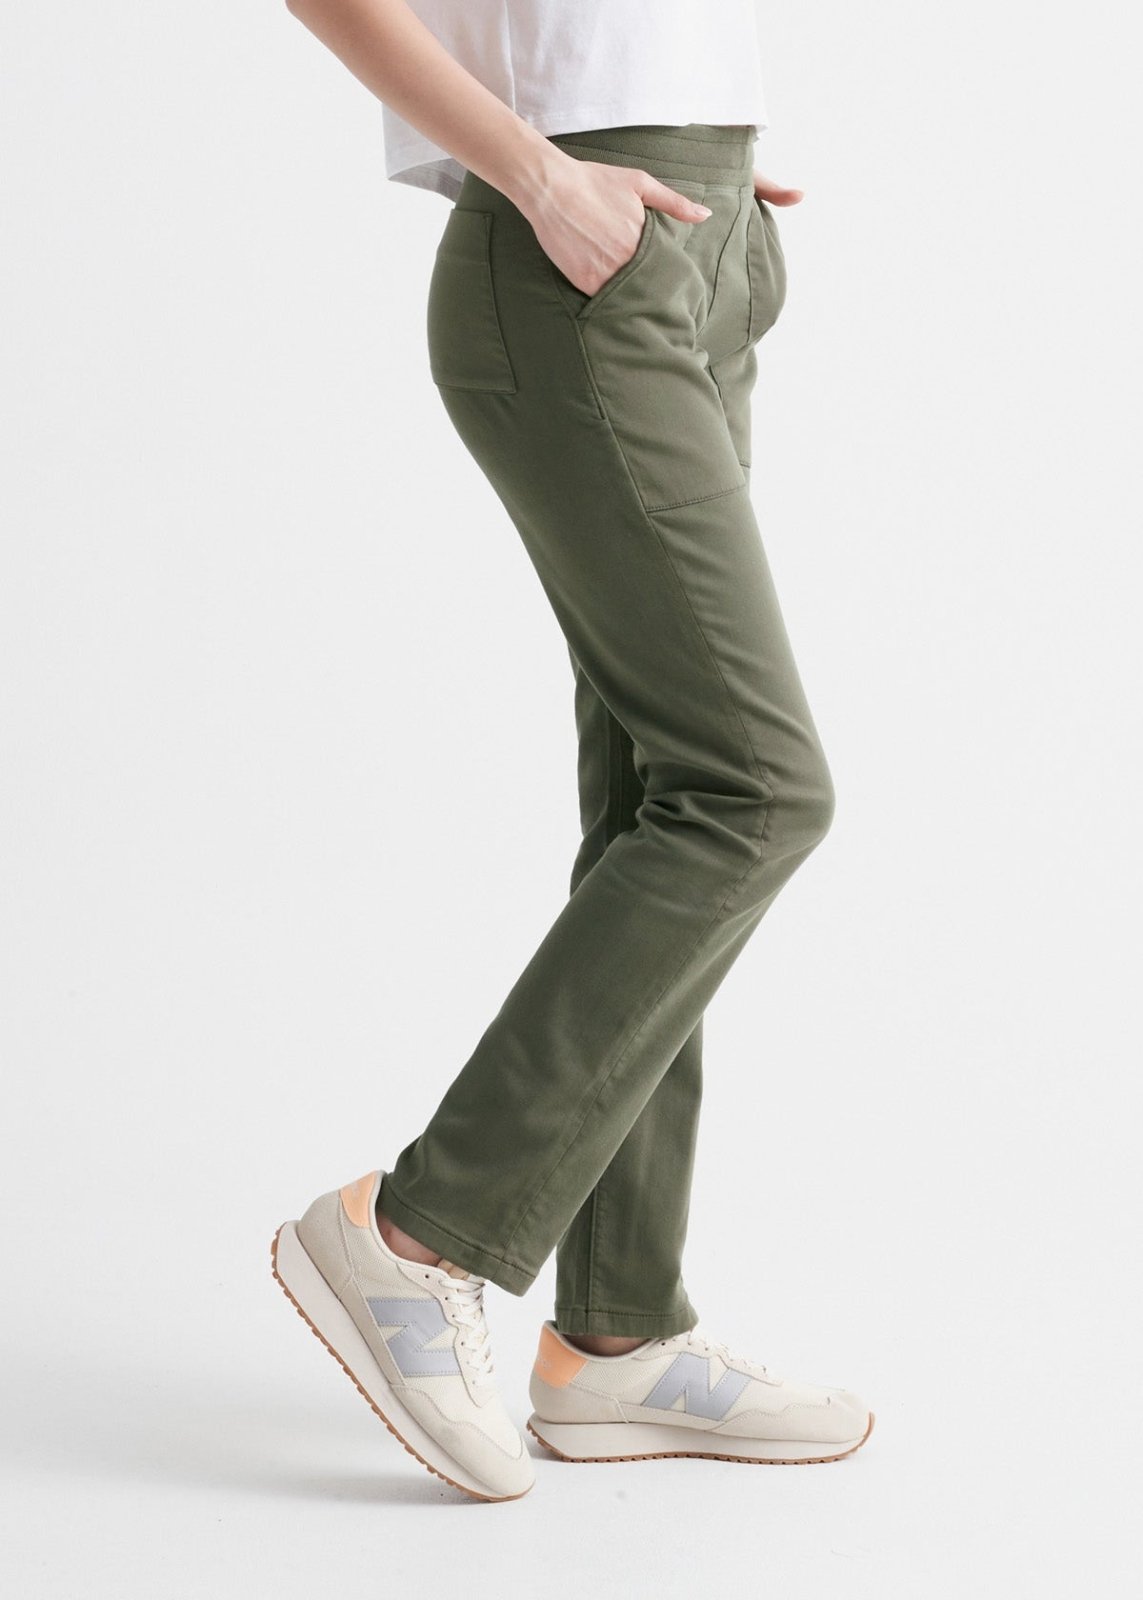 Women's Green Sweatpant Side